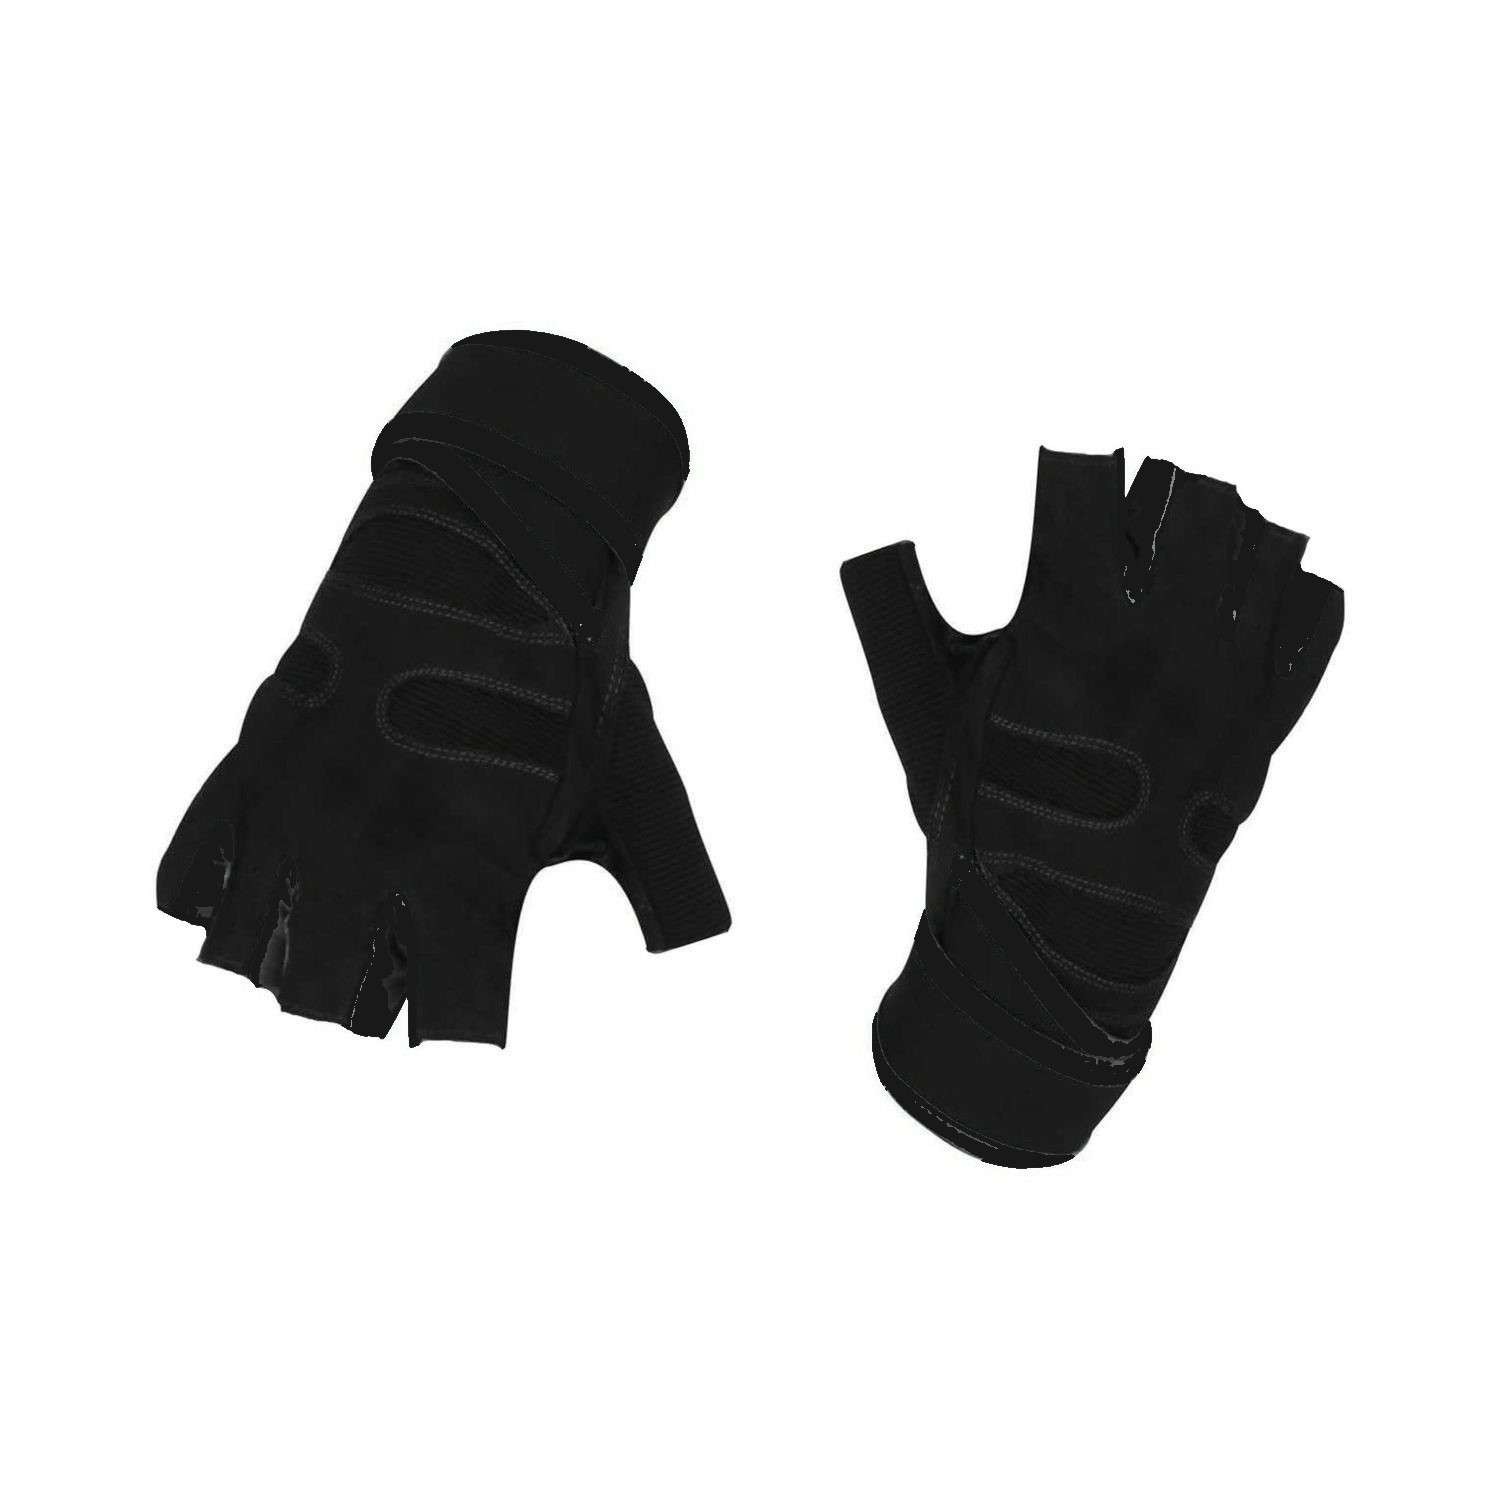 Нейлоновые перчатки NPOSS противоскользящие черные размер M - фото 1